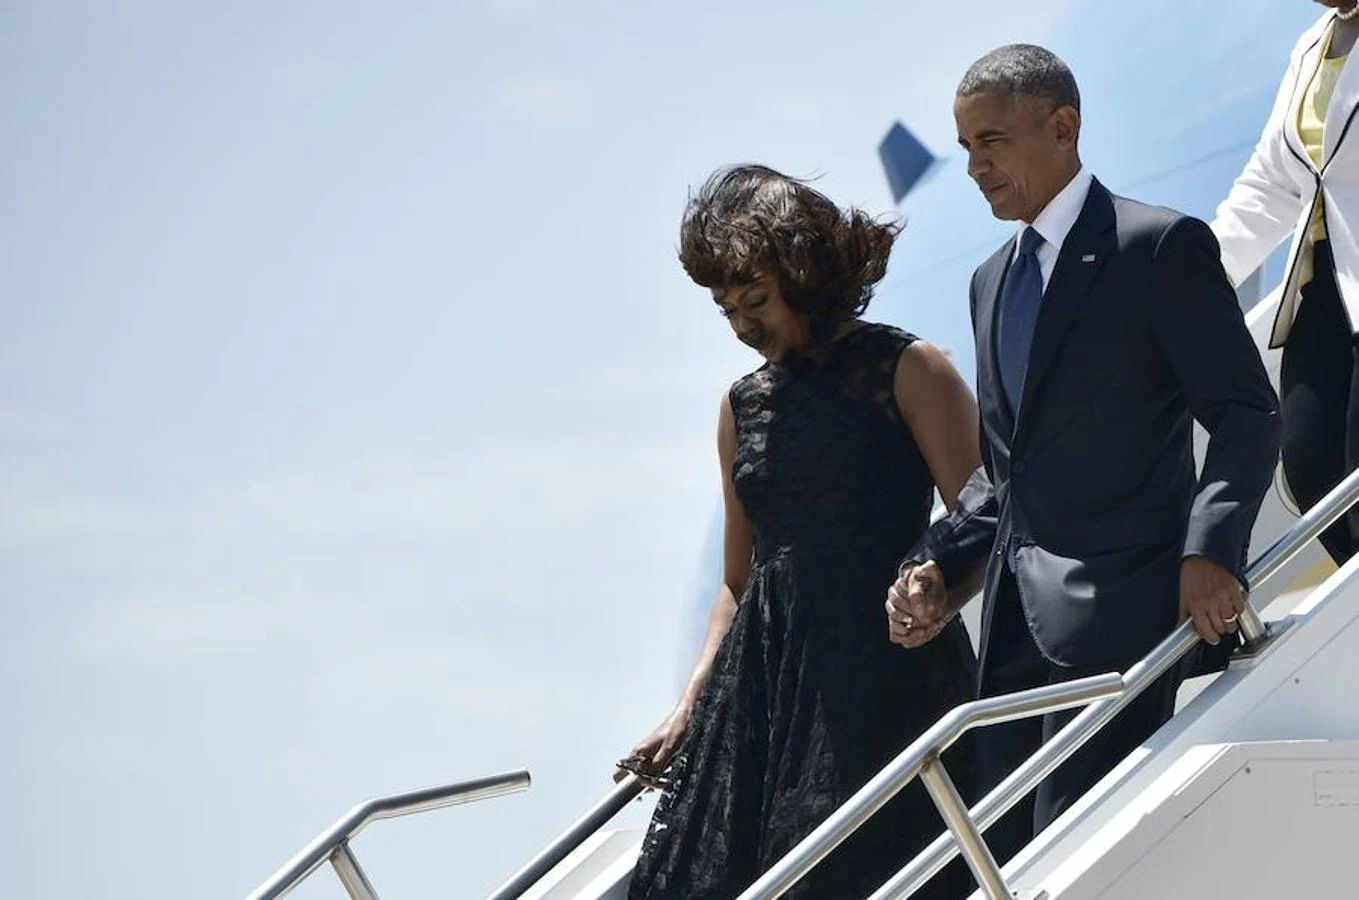 El mandatario norteamericano, Barack Obama, llega a Dallas acompañado de su esposa, Michelle Obama